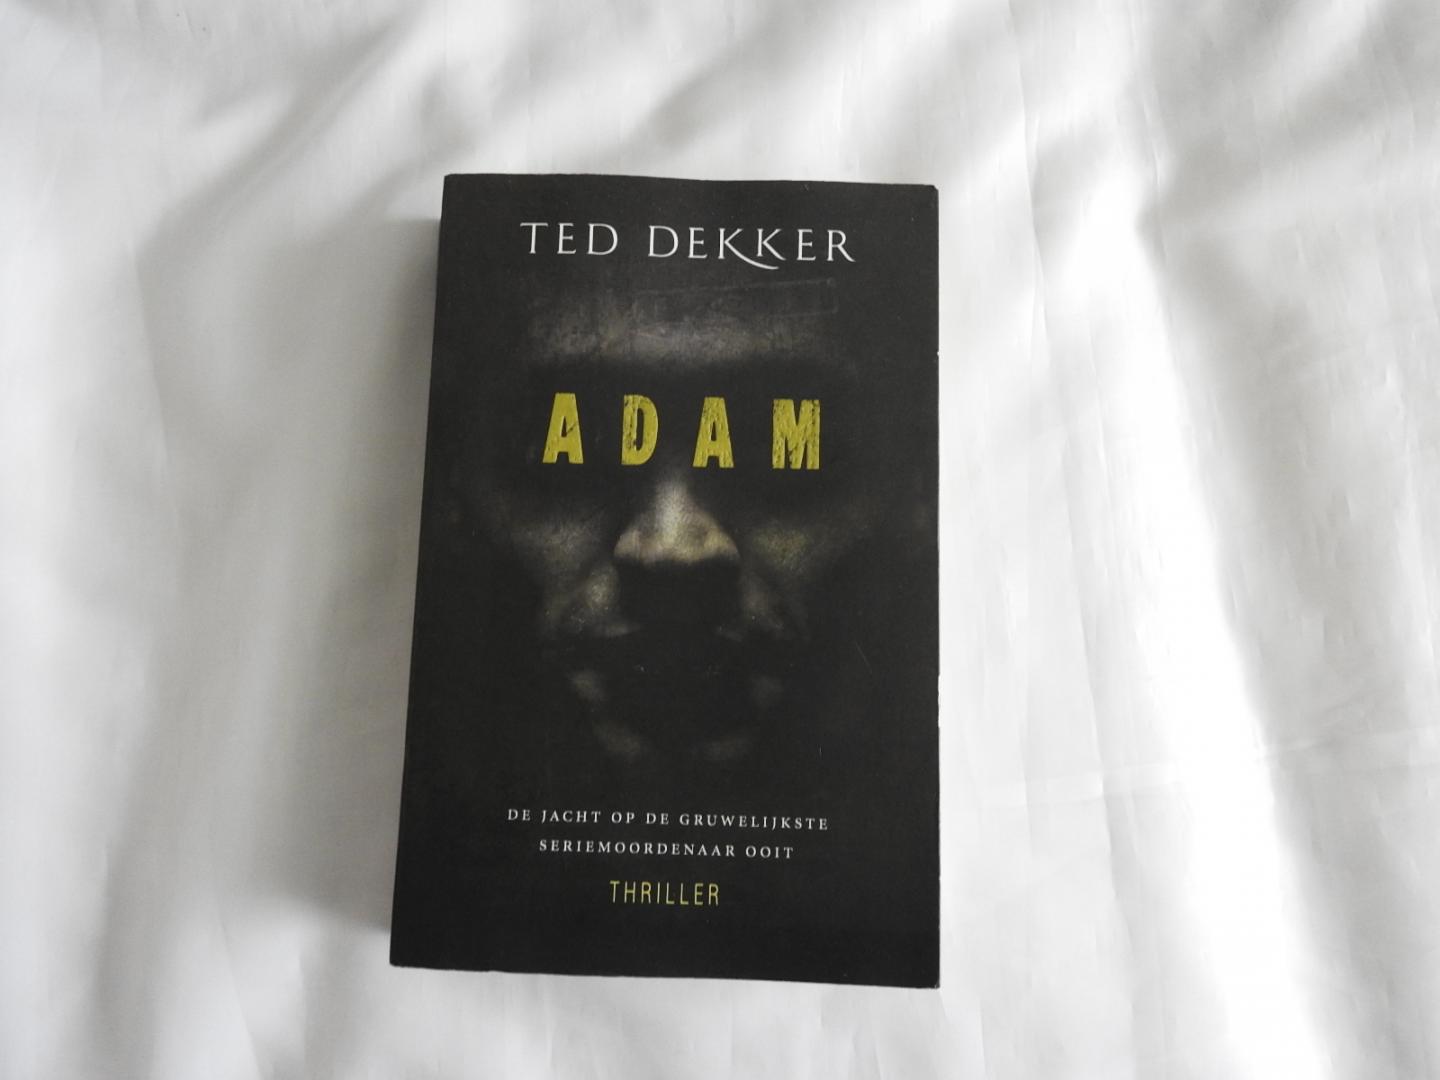 Dekker, Ted - Adam - de jacht op de gruwelijkste seriemoordenaar ooit